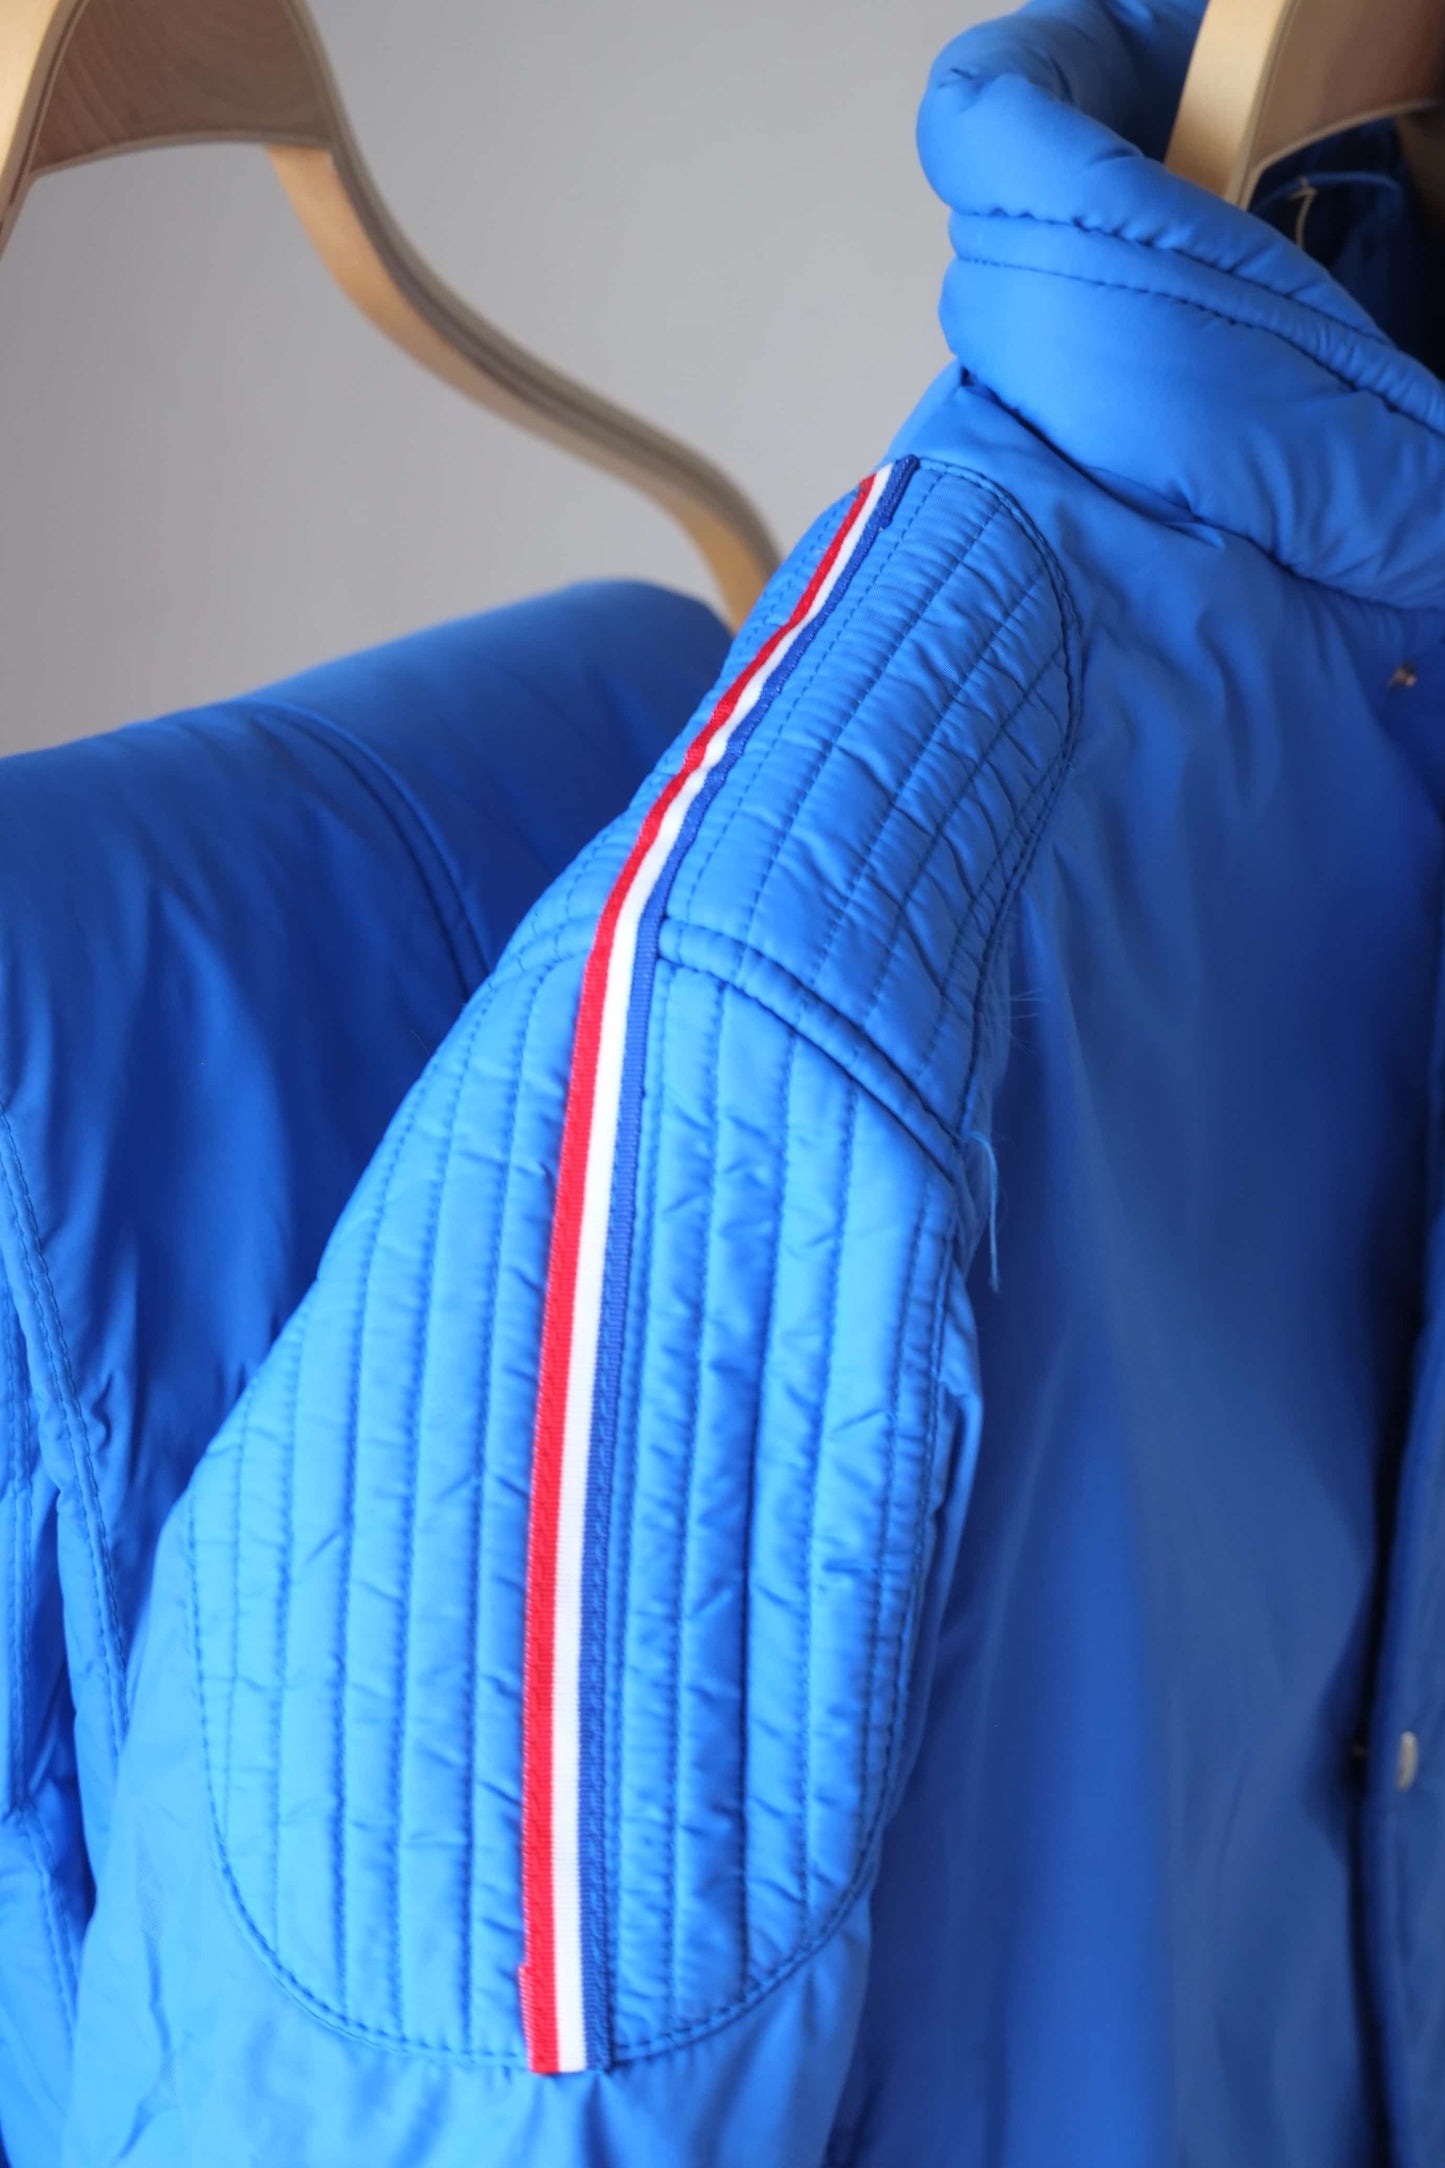 Close up view of blue Vintage Men's 70's Ski Suit